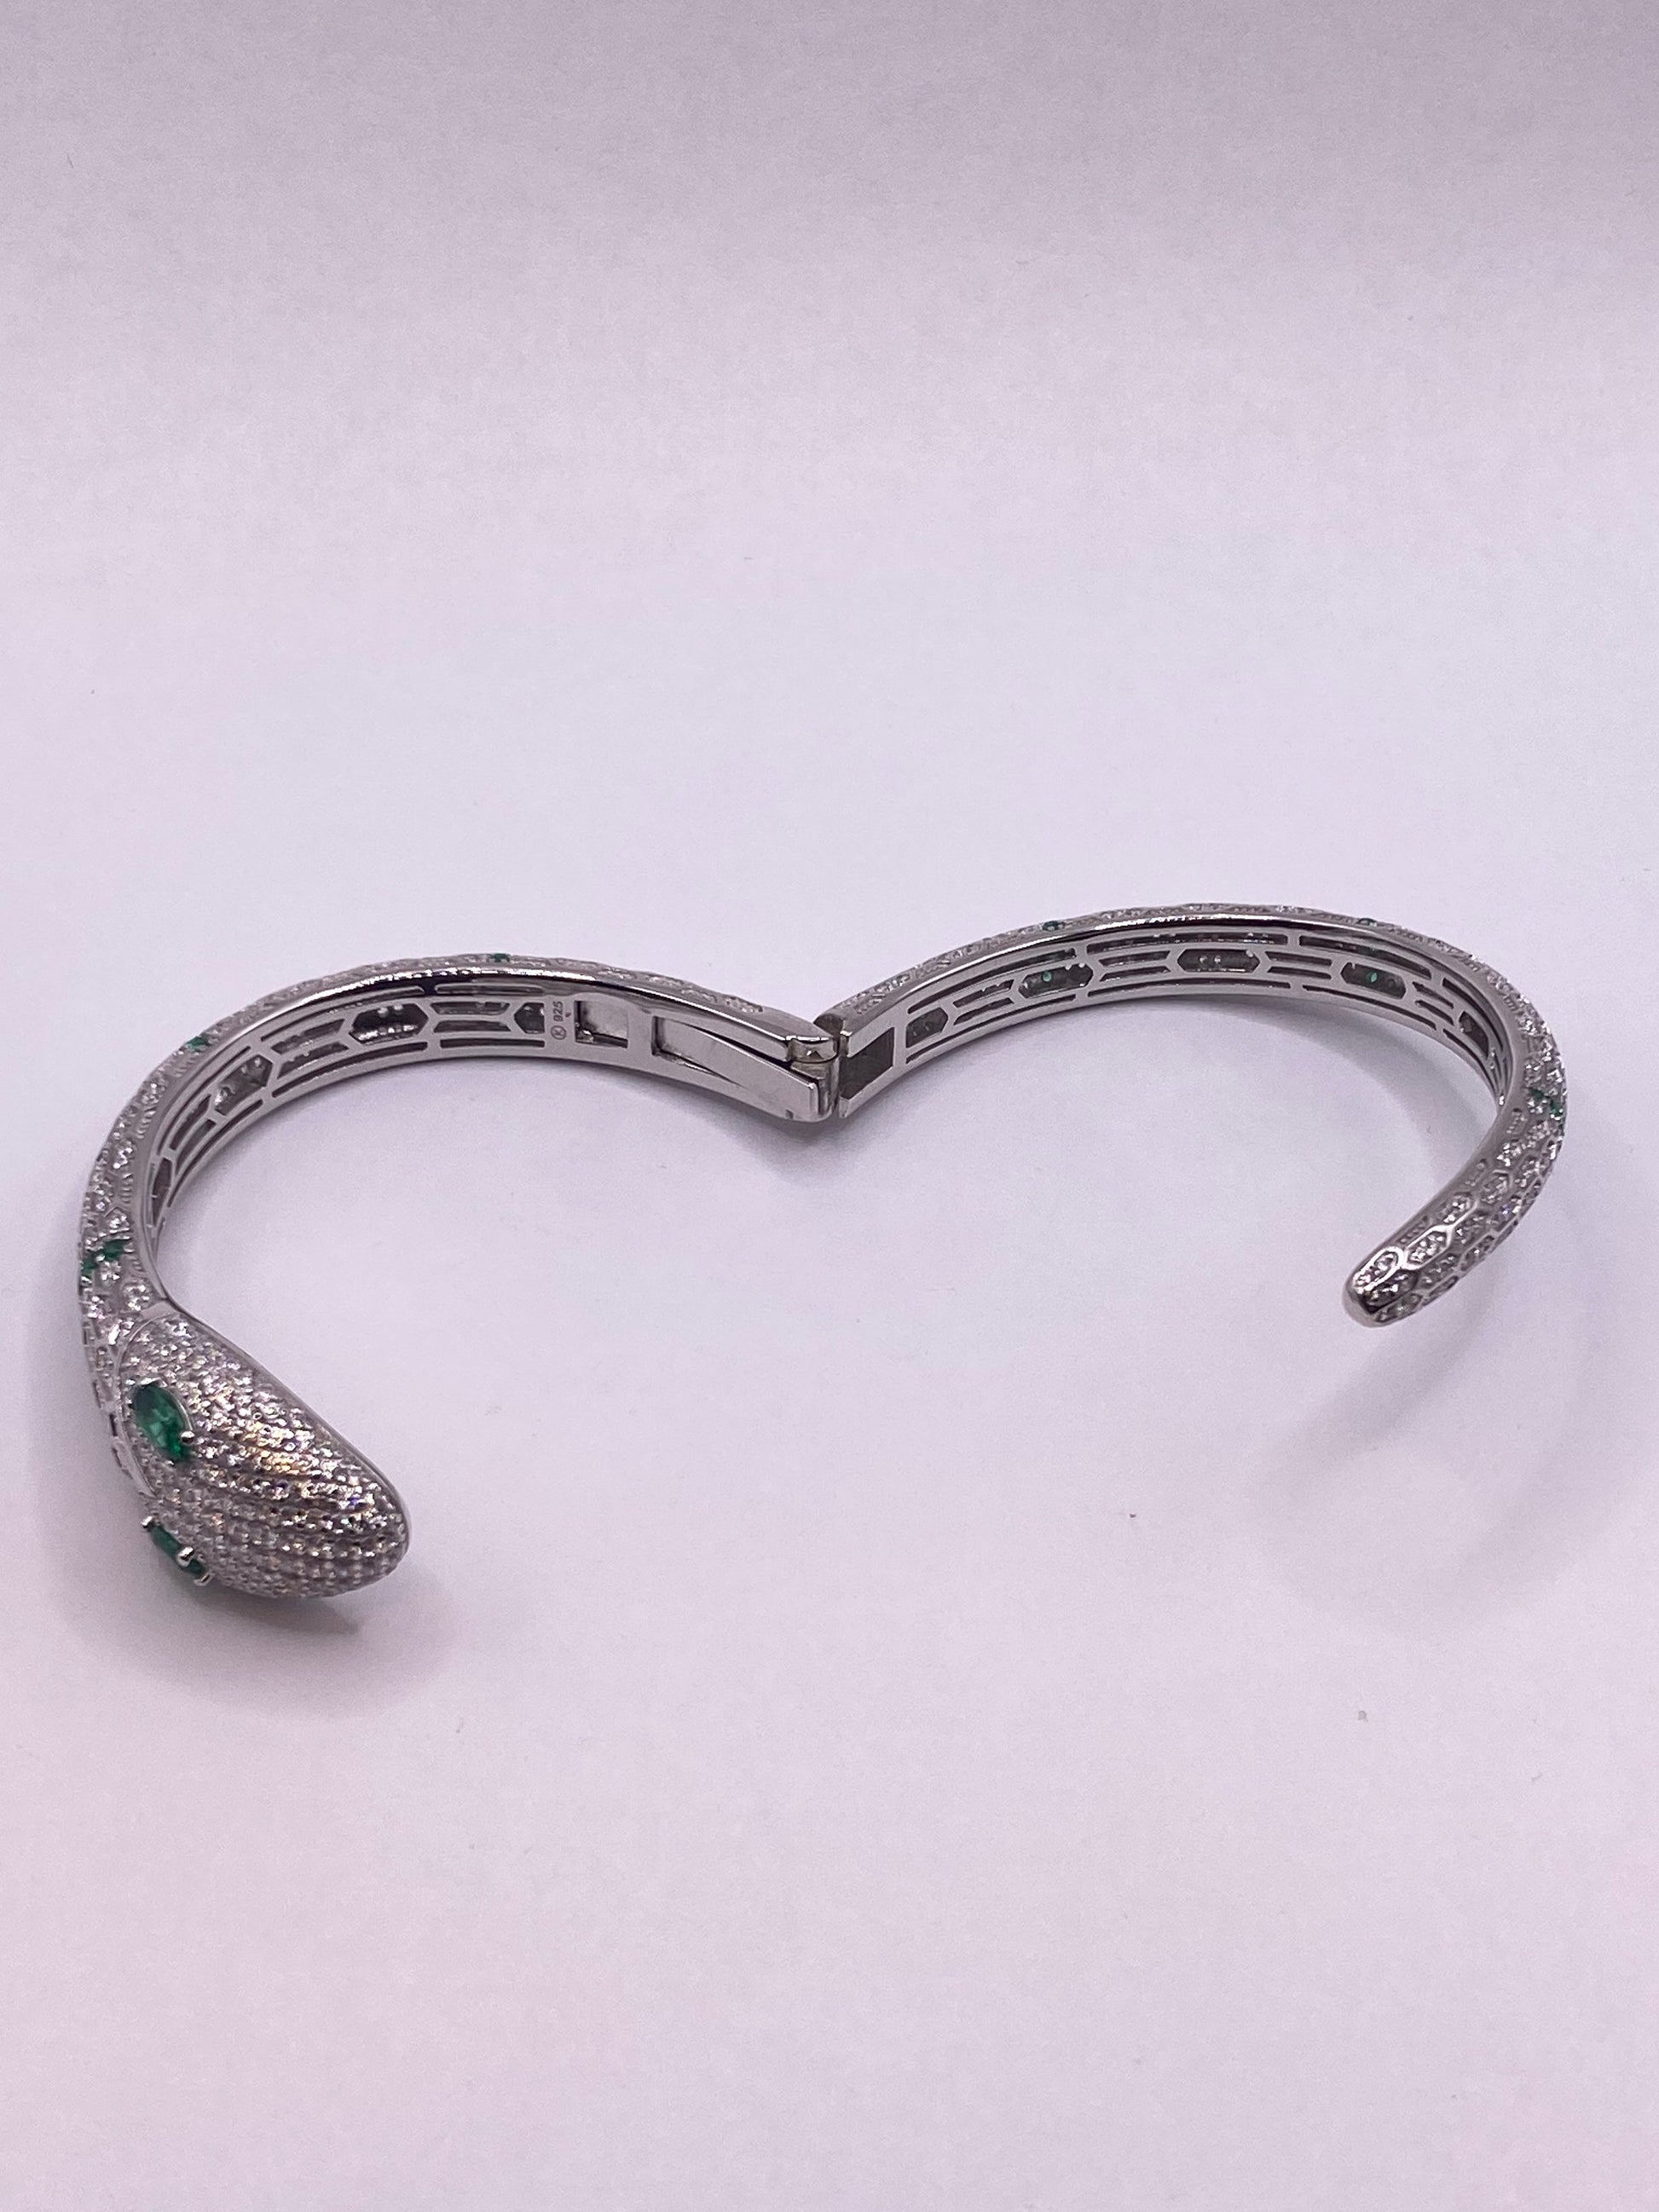 Vintage Snake Bangle Bracelet 925 Sterling Silver Crystal Pave